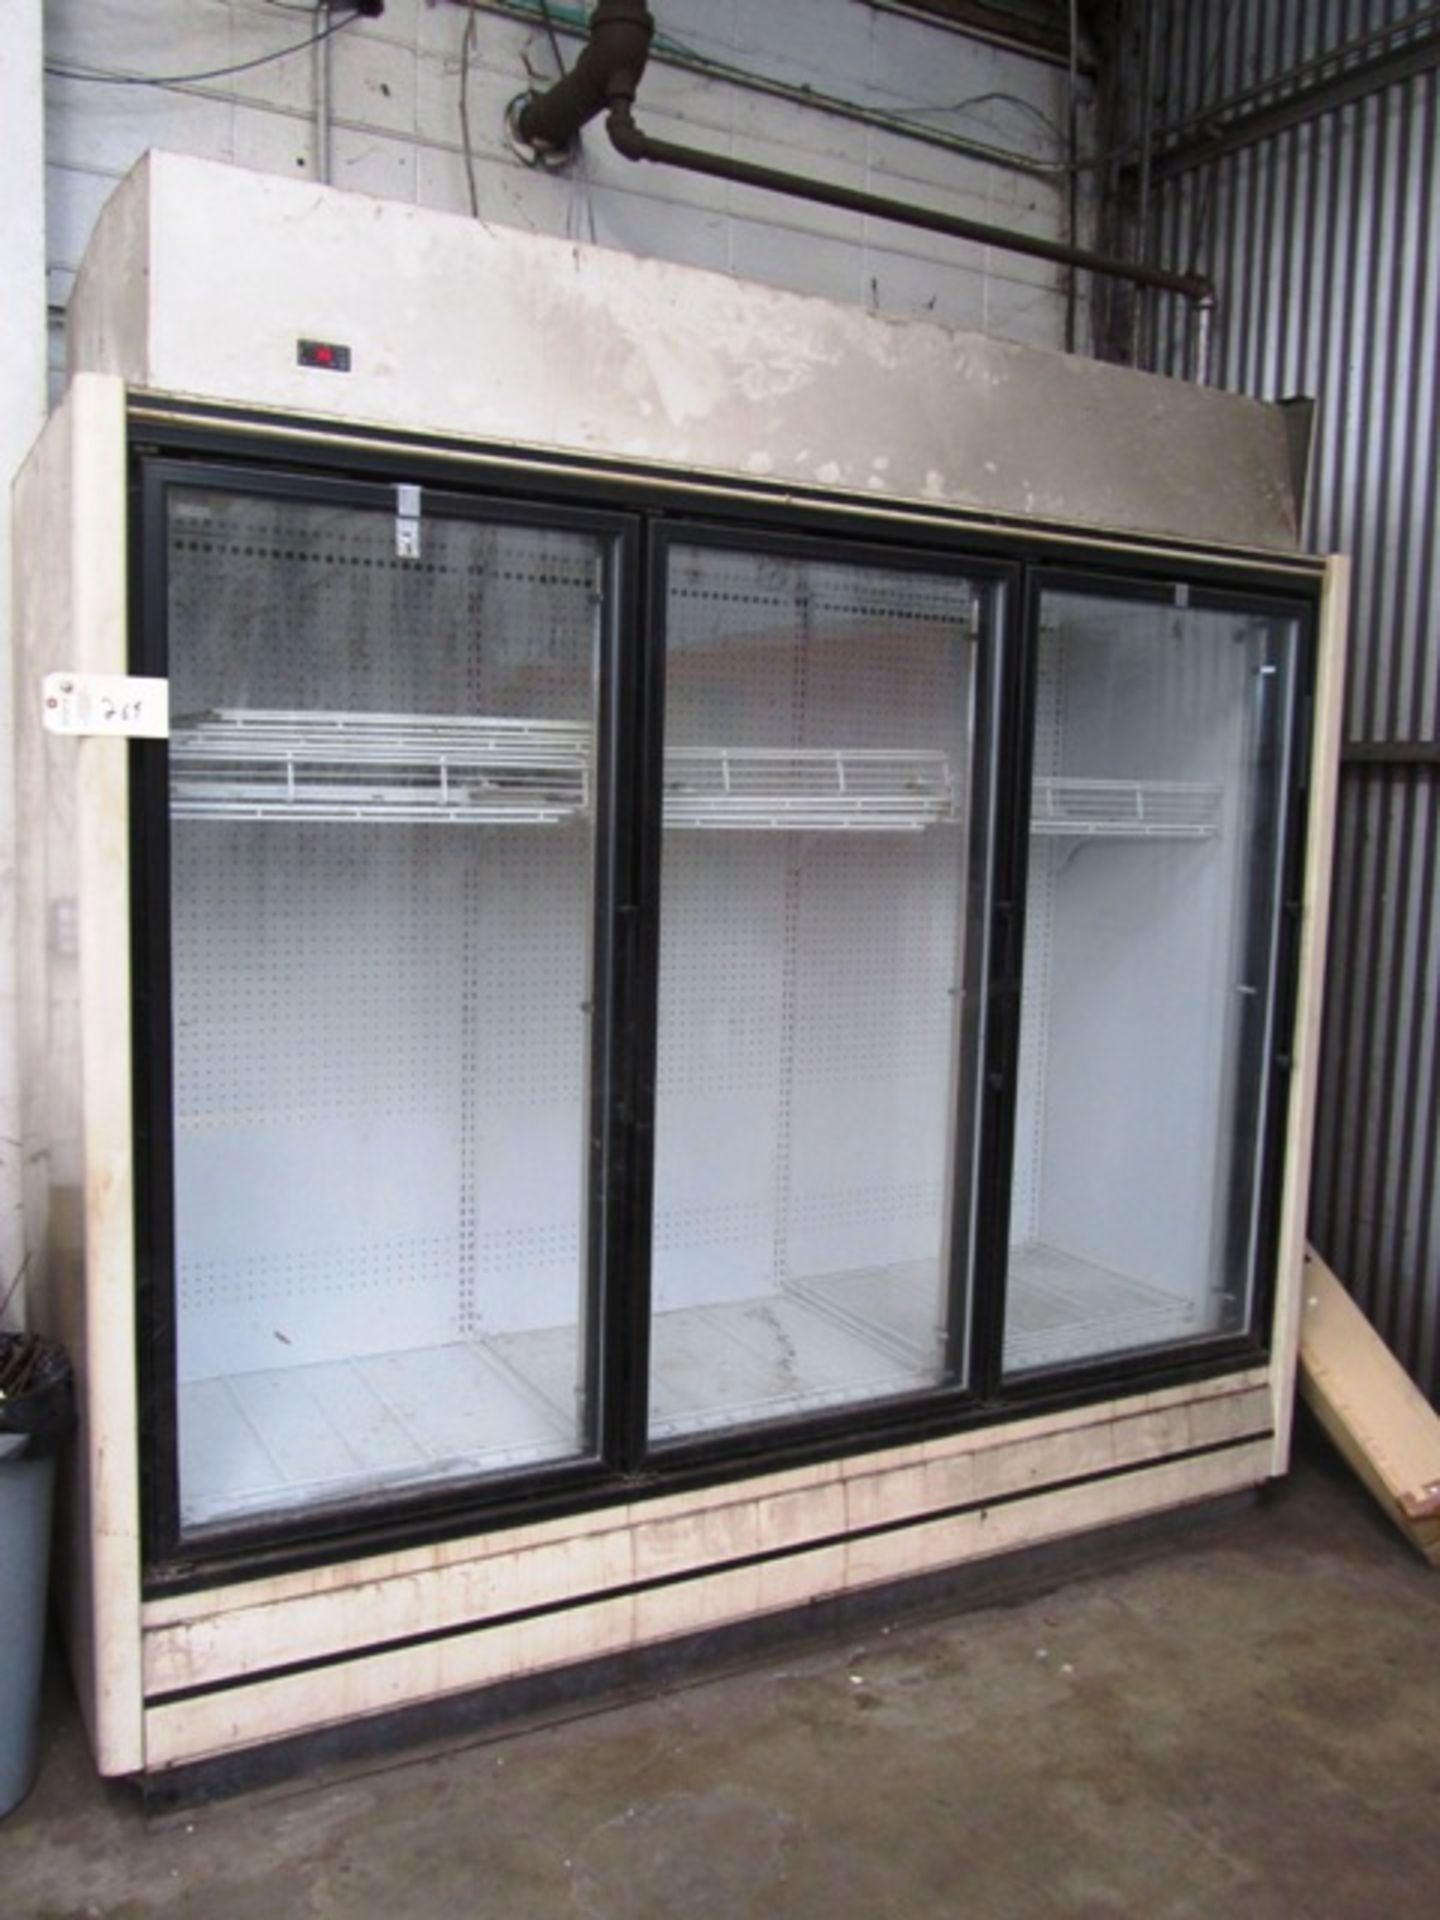 3 Door Commercial Refrigerator